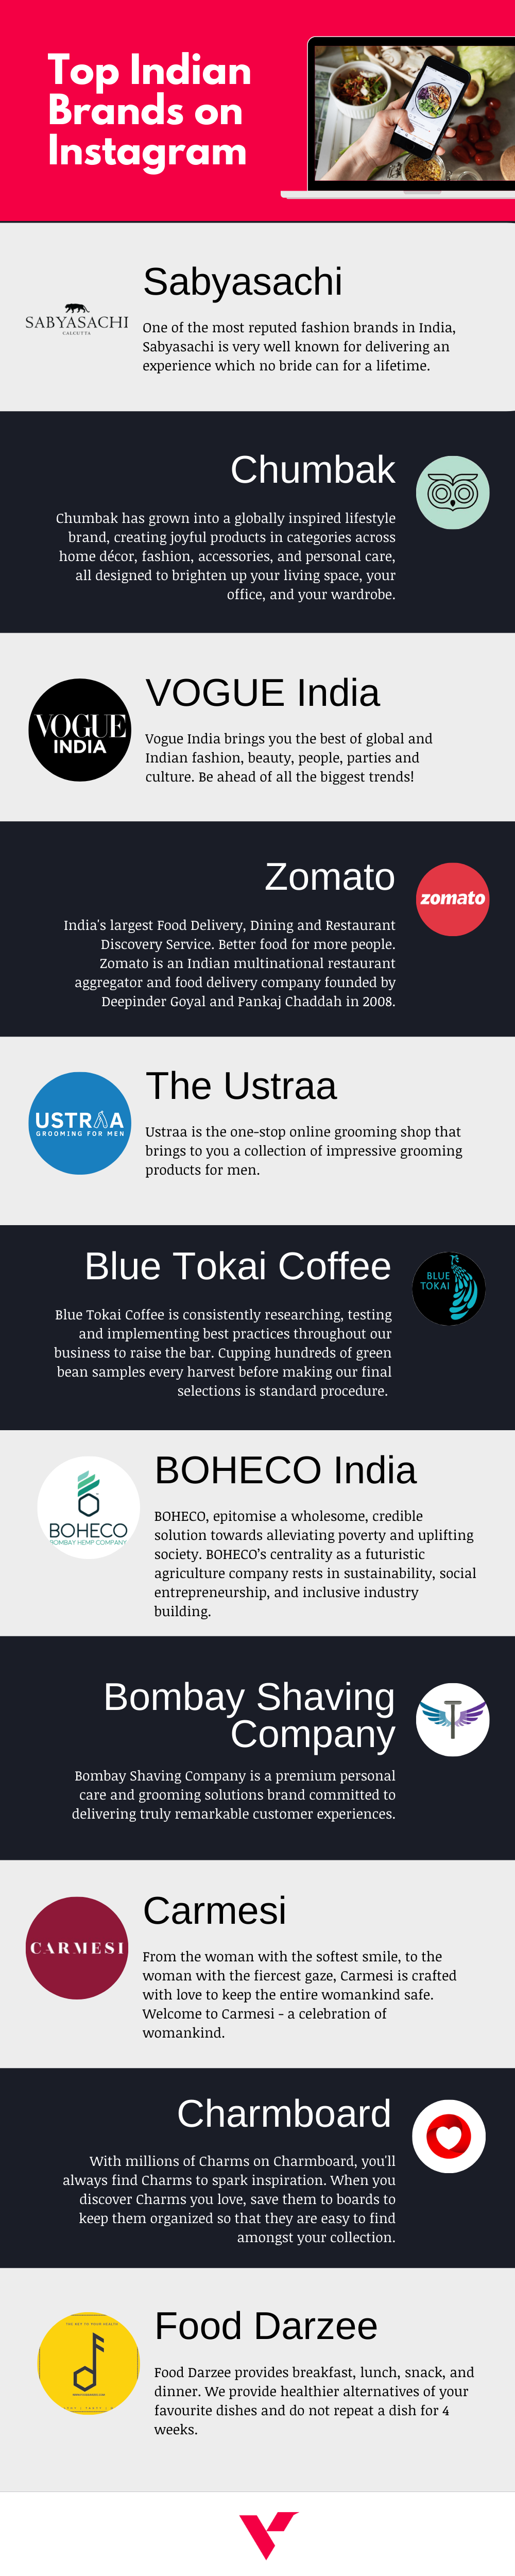 Top Indian Brands on Instagram